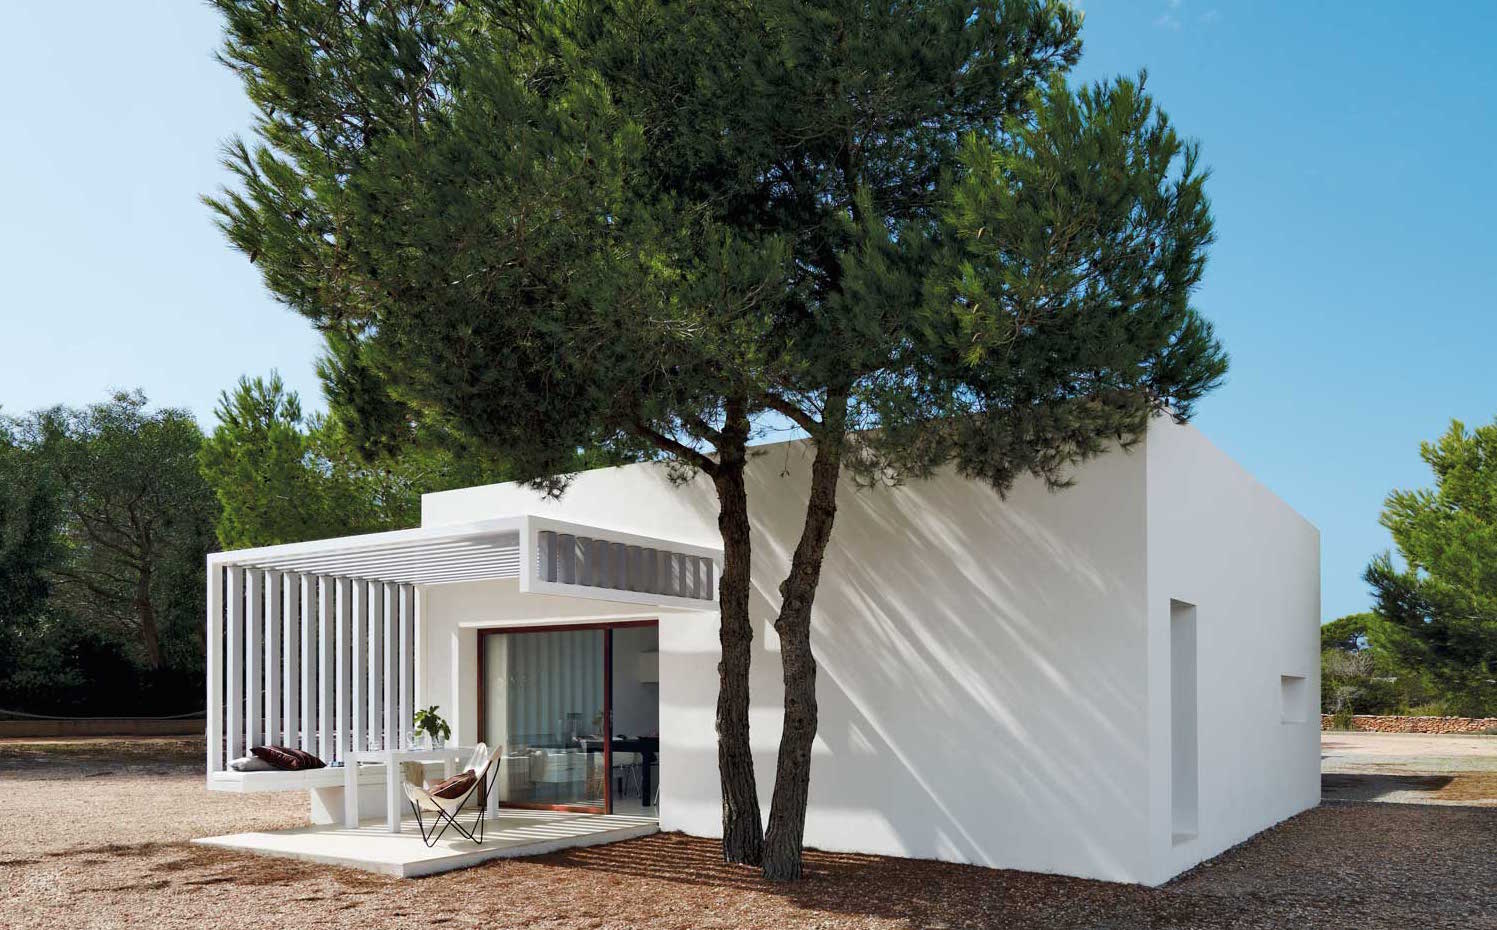 00311145. Posada sobre un suelo de grava y rodeada de pinos y sabinas, la casa se enmarca en el paisaje de Formentera.